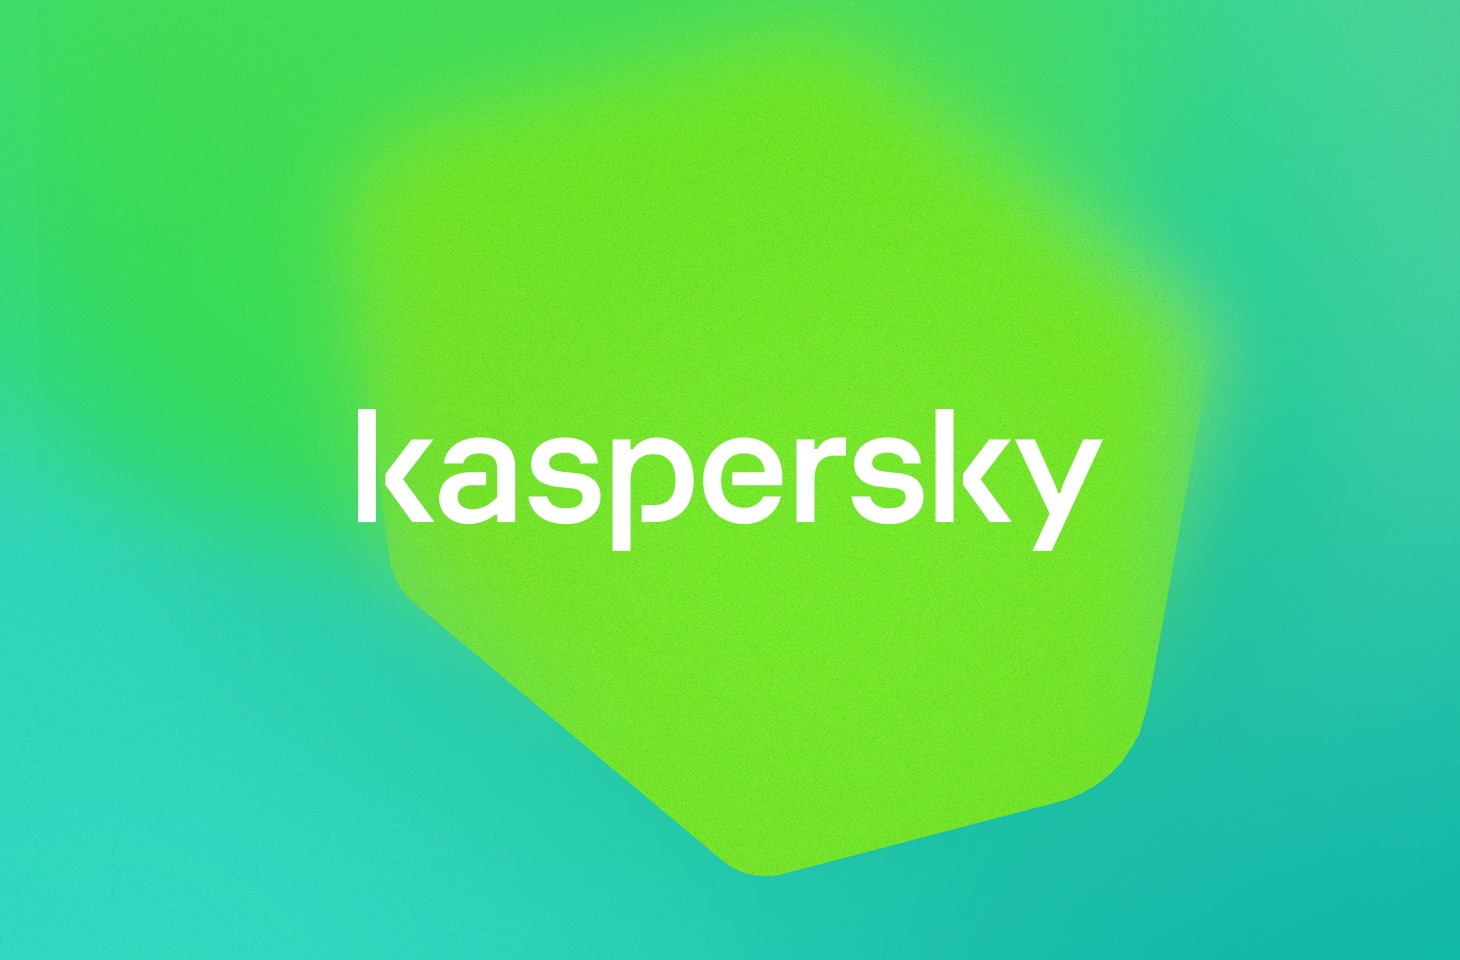 kaspersky activation code generator